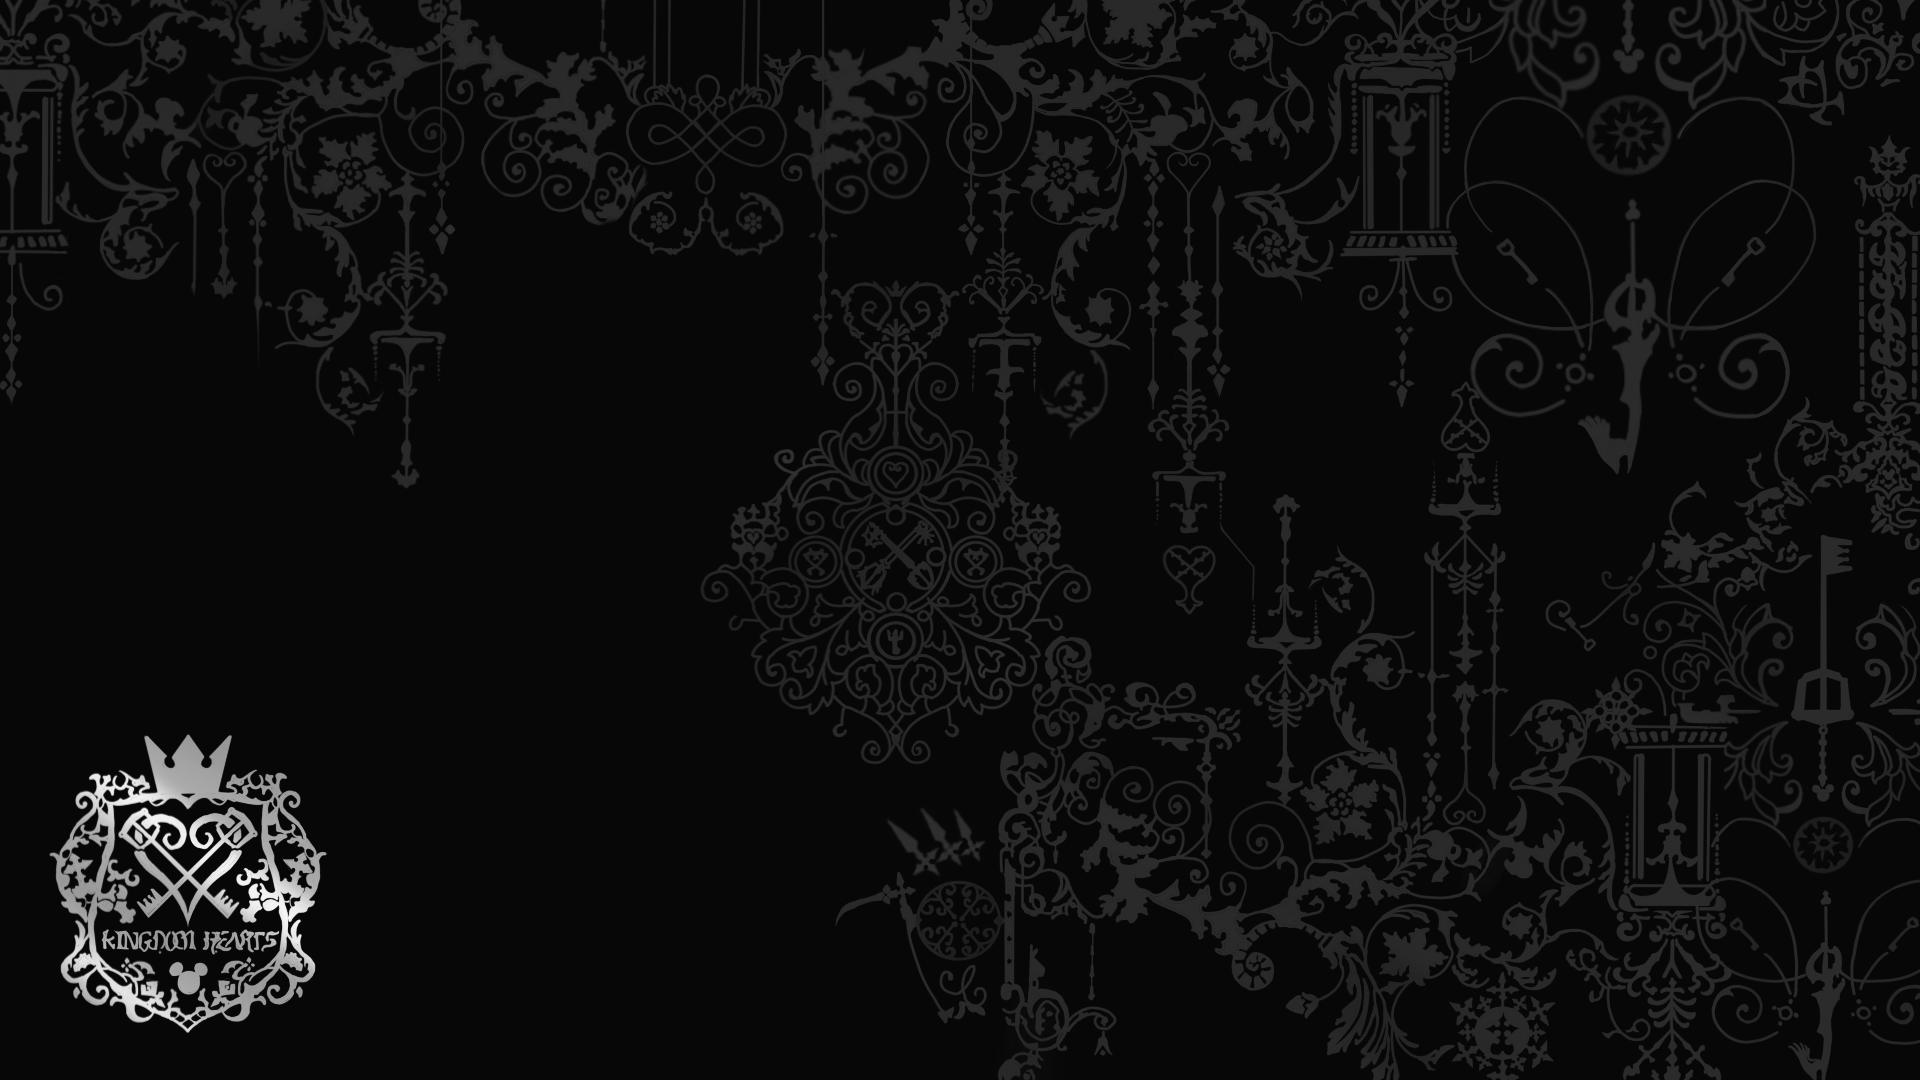 Download Kingdom Hearts Ps4 Wallpaper Hd Backgrounds Download Itl Cat